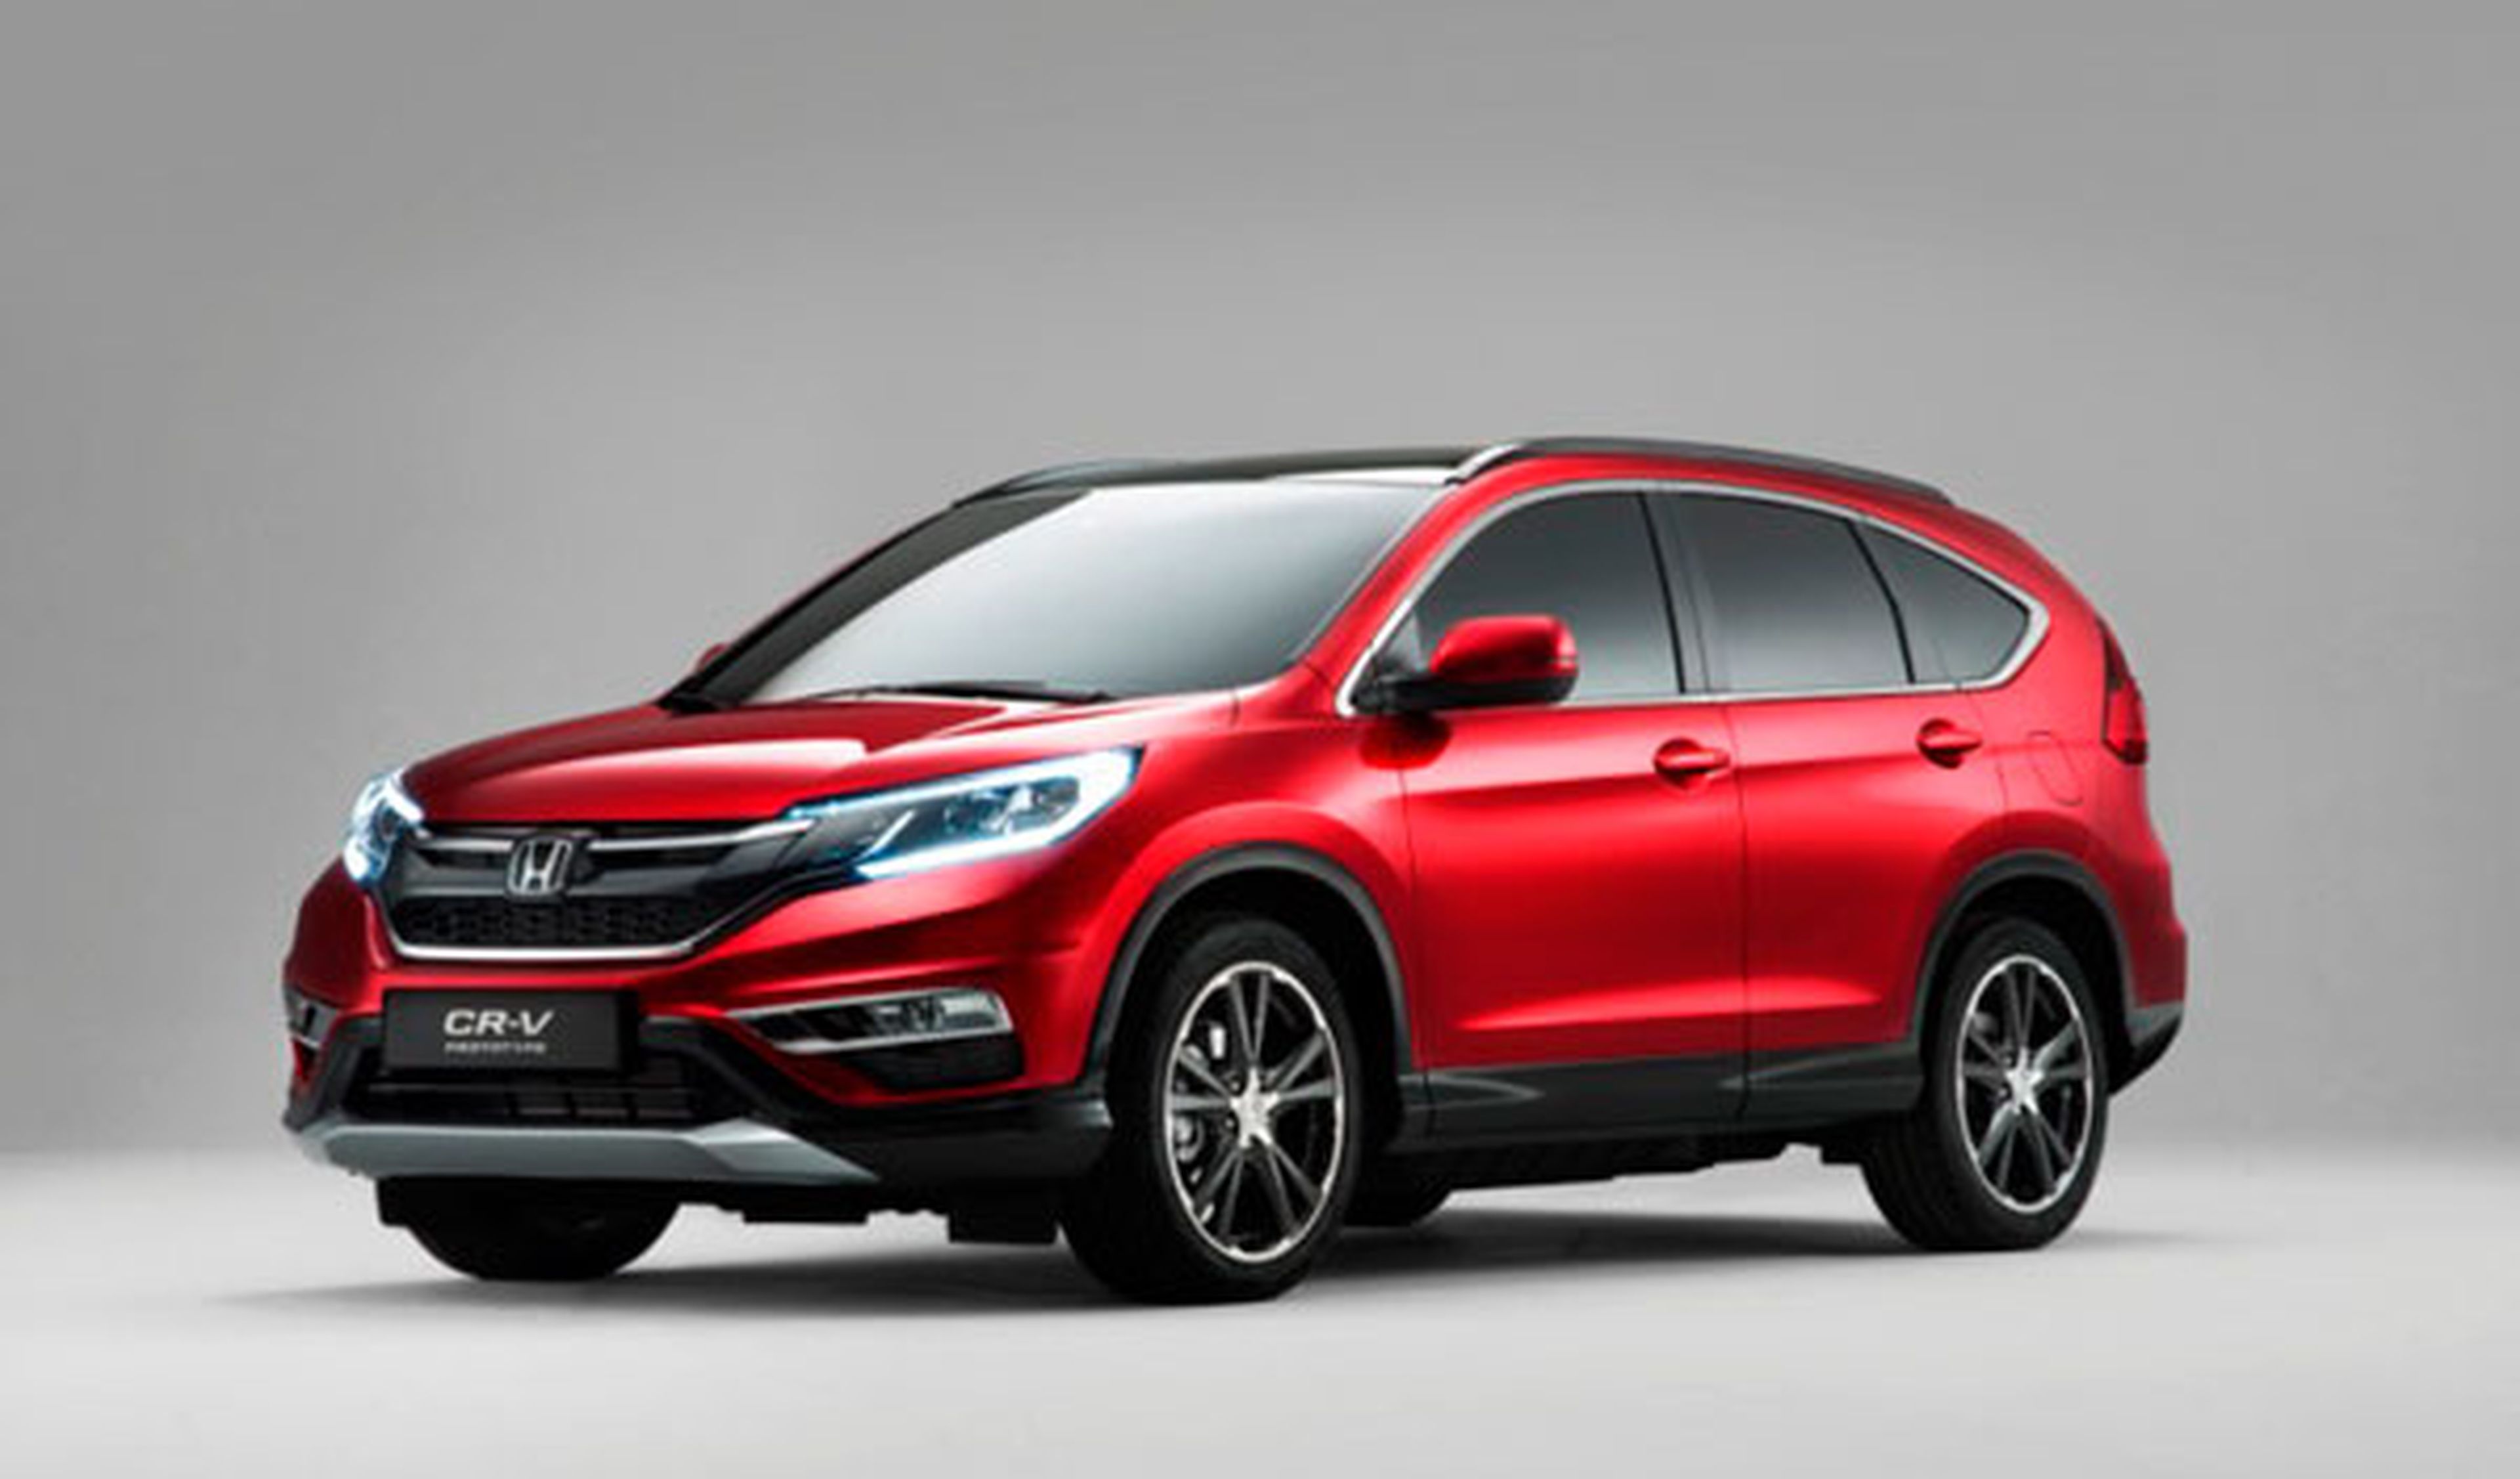 Honda CR-V 2015: cambios estéticos y nuevos motores